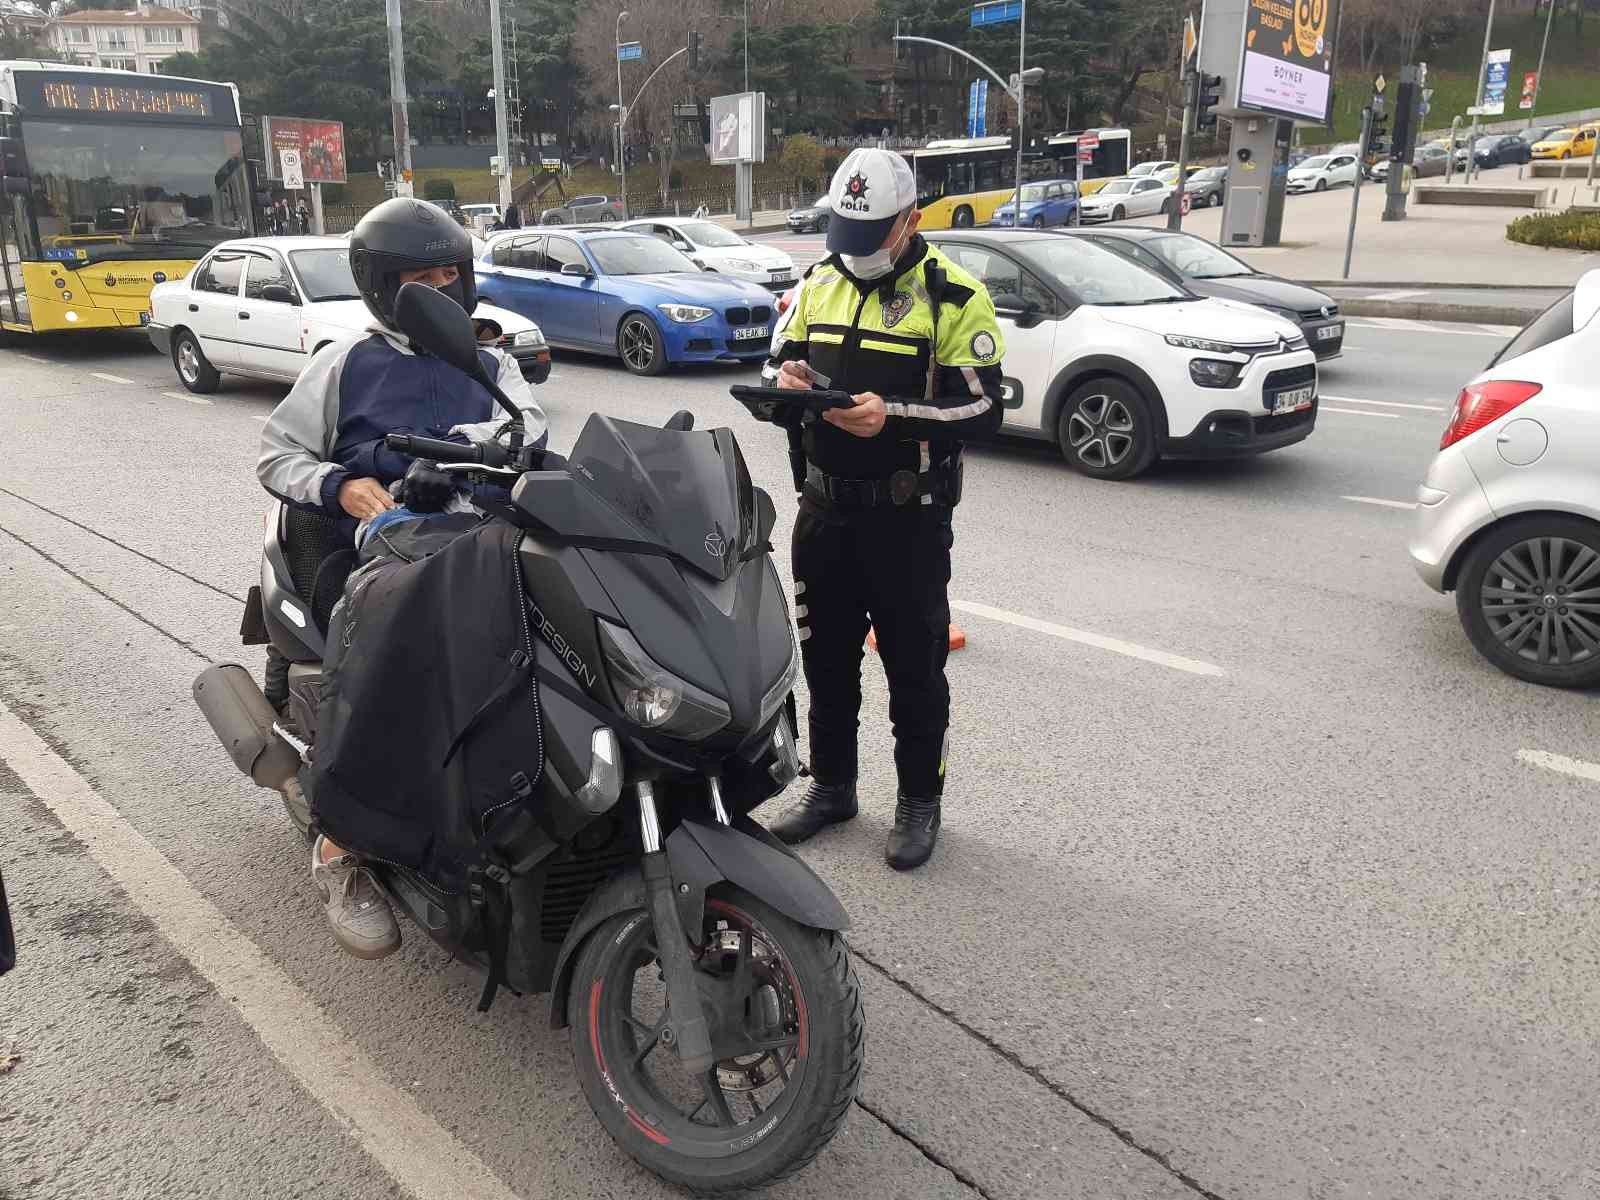 Beşiktaş’ta motosiklet denetimi #istanbul